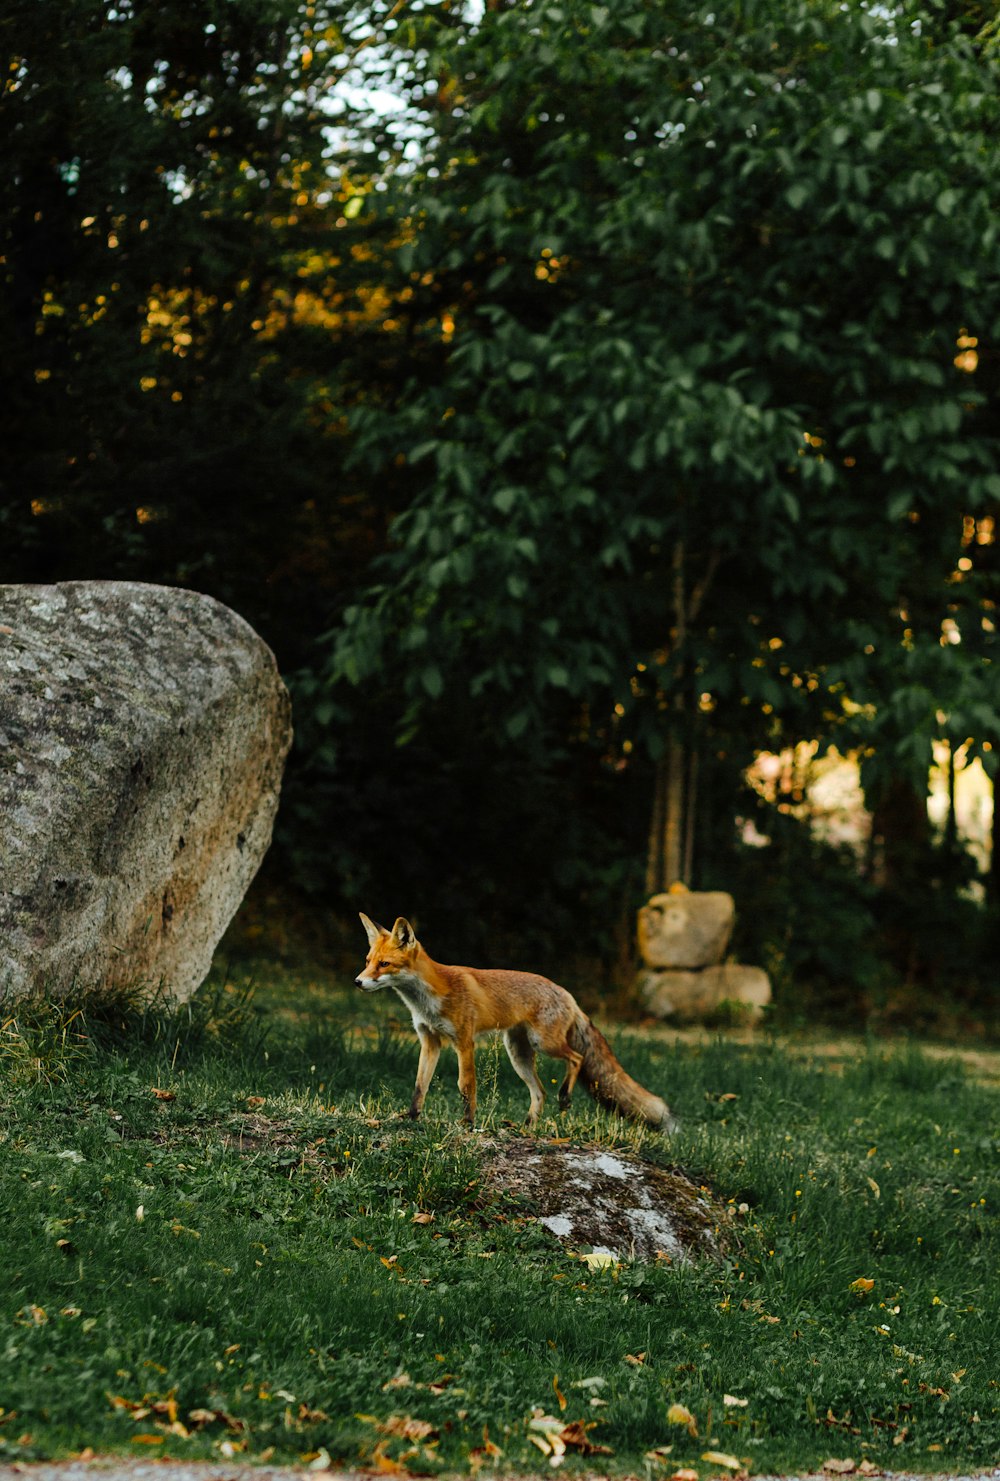 a fox in a grassy area